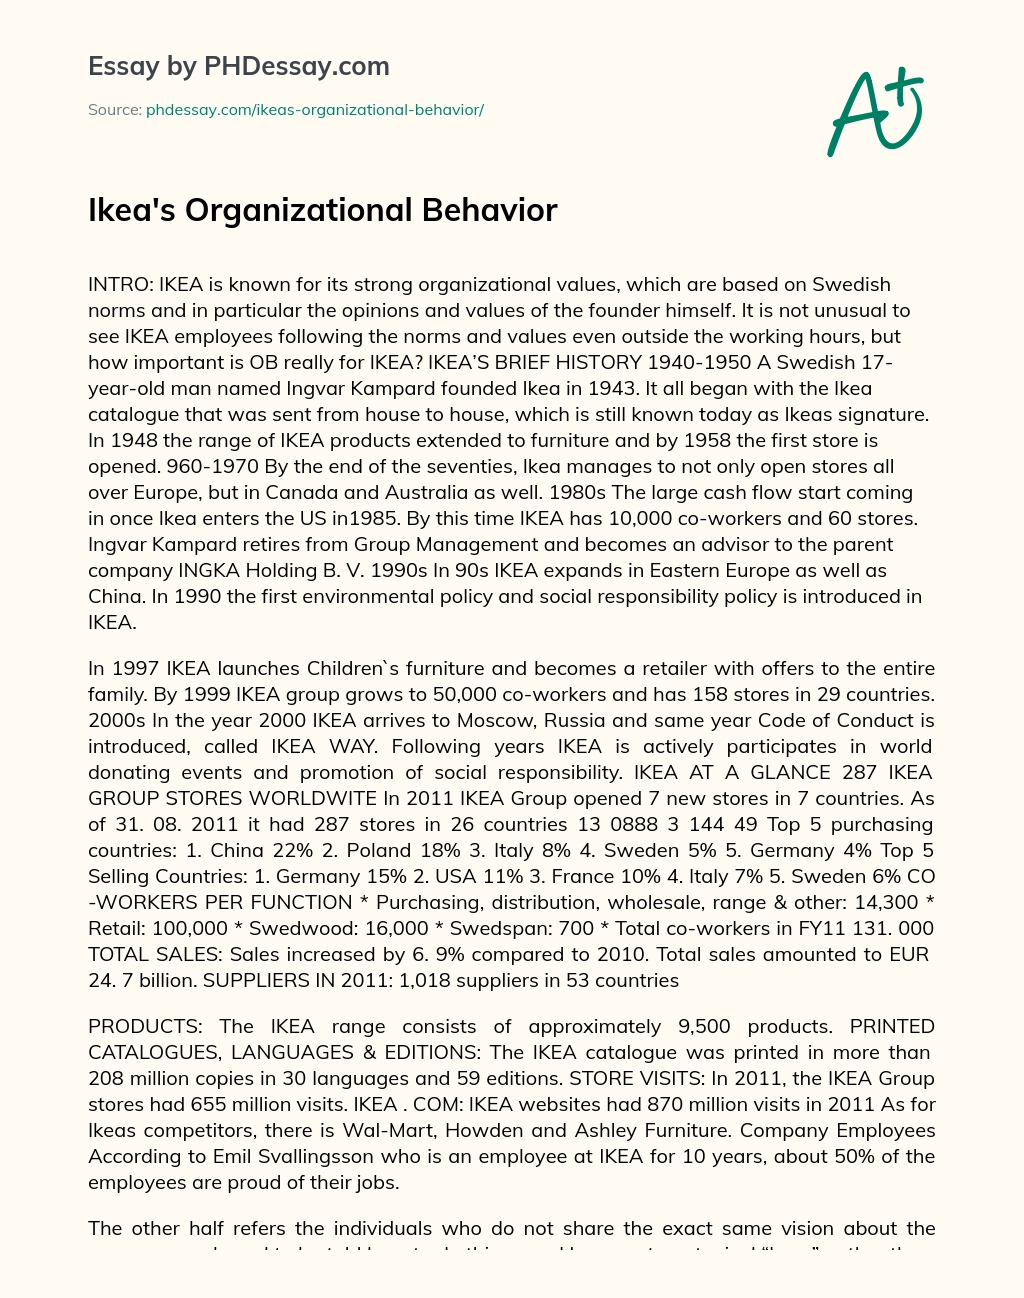 Ikea’s Organizational Behavior essay